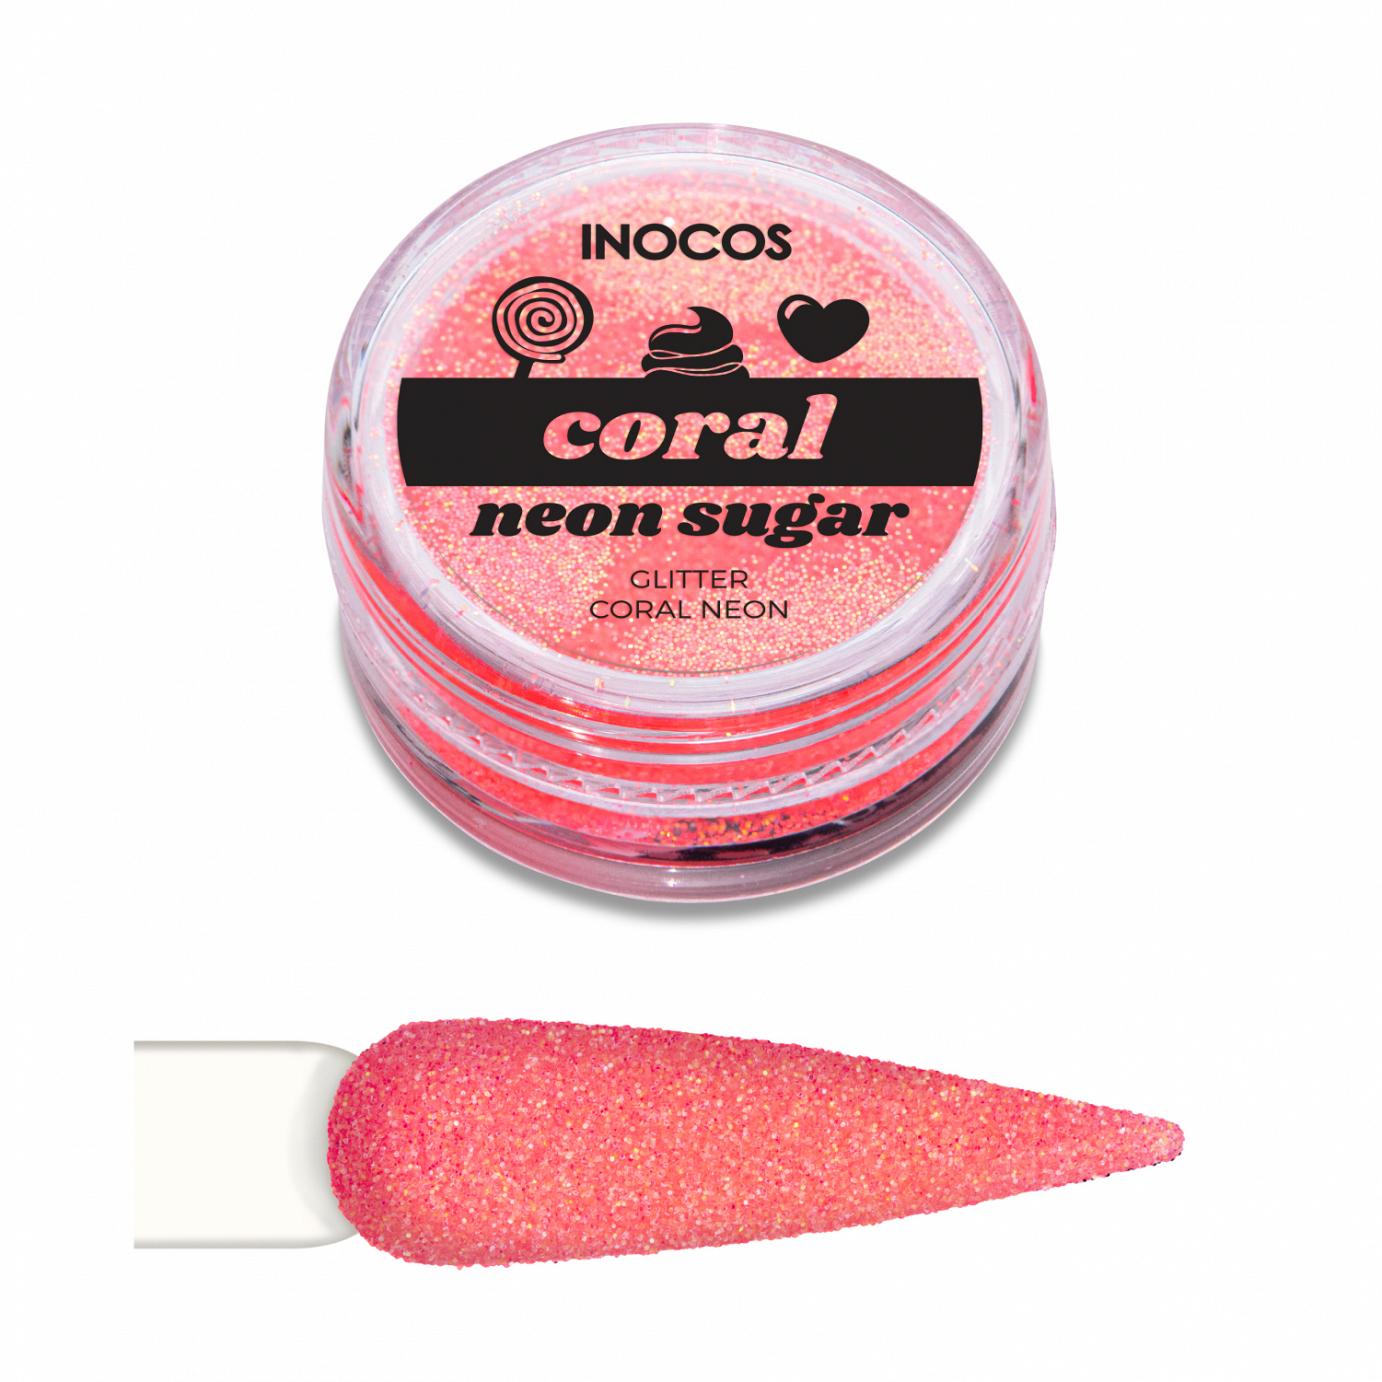 Inocos glitter para uñas polvo Neon Sugar coral